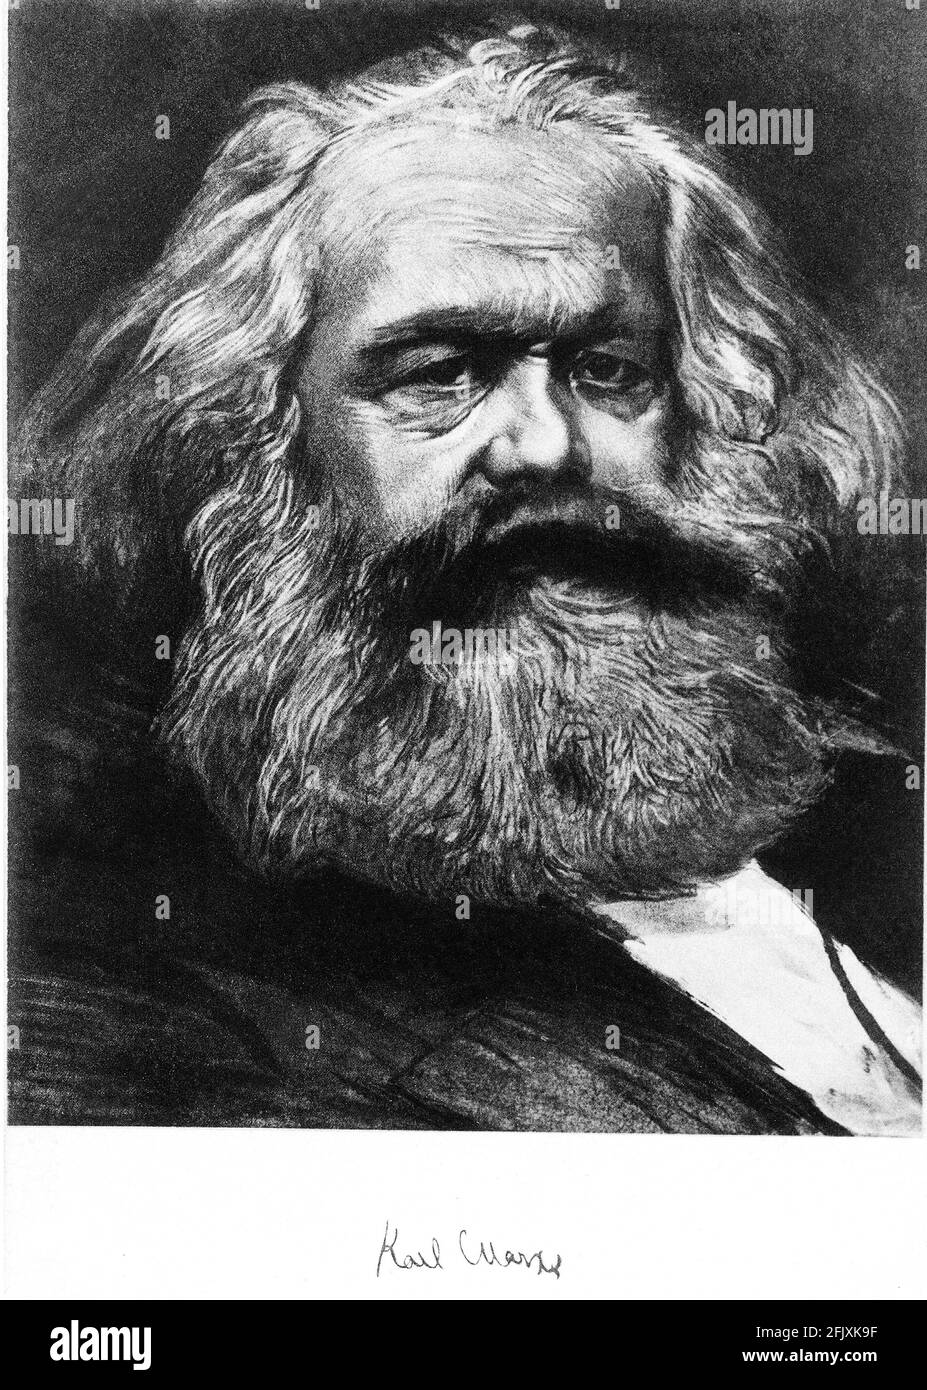 1880 CA., ALLEMAGNE : le philosophe allemand , économiste et politicien KARL MARX ( 1818 - 1883 ) , auteur de DAS KAPITAL ( il CAPITALE ) et le manifeste du Parti comuniste avec Engels ( 1848 ) - FILOSOFO - IDEOLOGO - IDÉOLOGUE - POLITHO - POLITICA - ECONOMIA - ECONOMISTA - COMUNISMO - SOCIALISMO - PCI - PSI - P.C.I. - P.S.I. - PARTITO SOCIALISTA - PARTITO COMUNISTA - SINISTRA - portrait - barbe - cheveux blancs - capelli bianchi - ancien homme âgé - uomo anziano vecchio - signature - firma - autografo - autographe --- Archivio GBB Banque D'Images